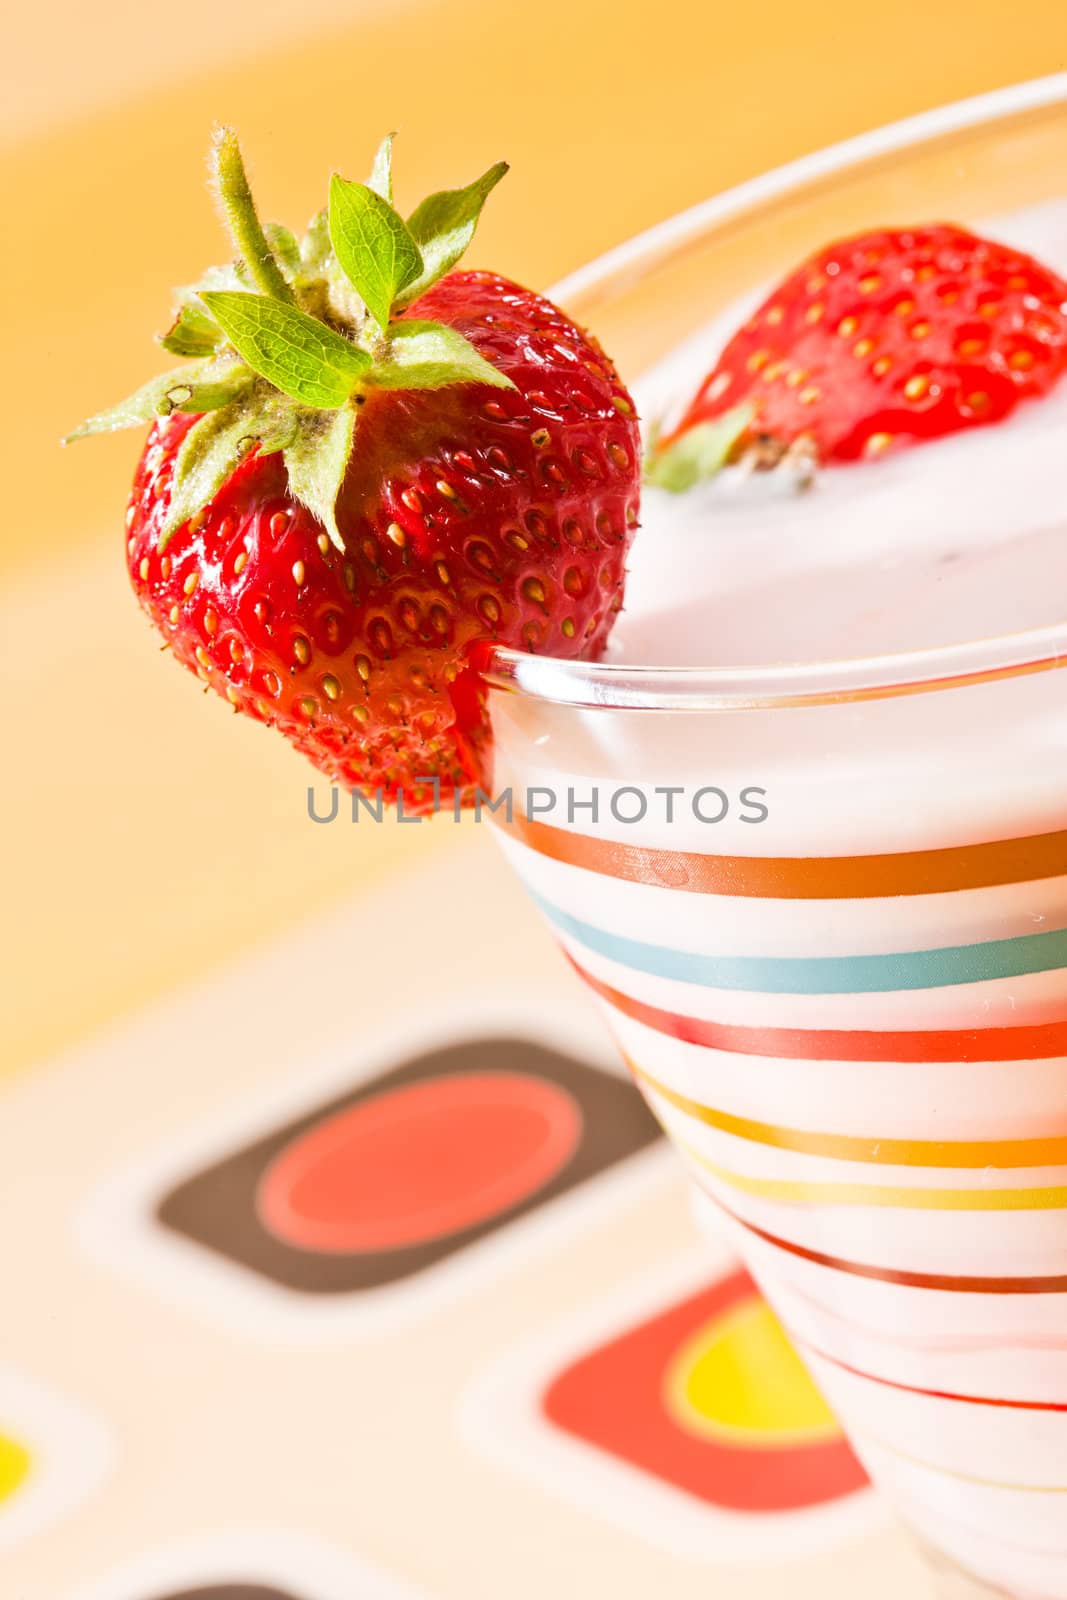 strawberry dessert by agg